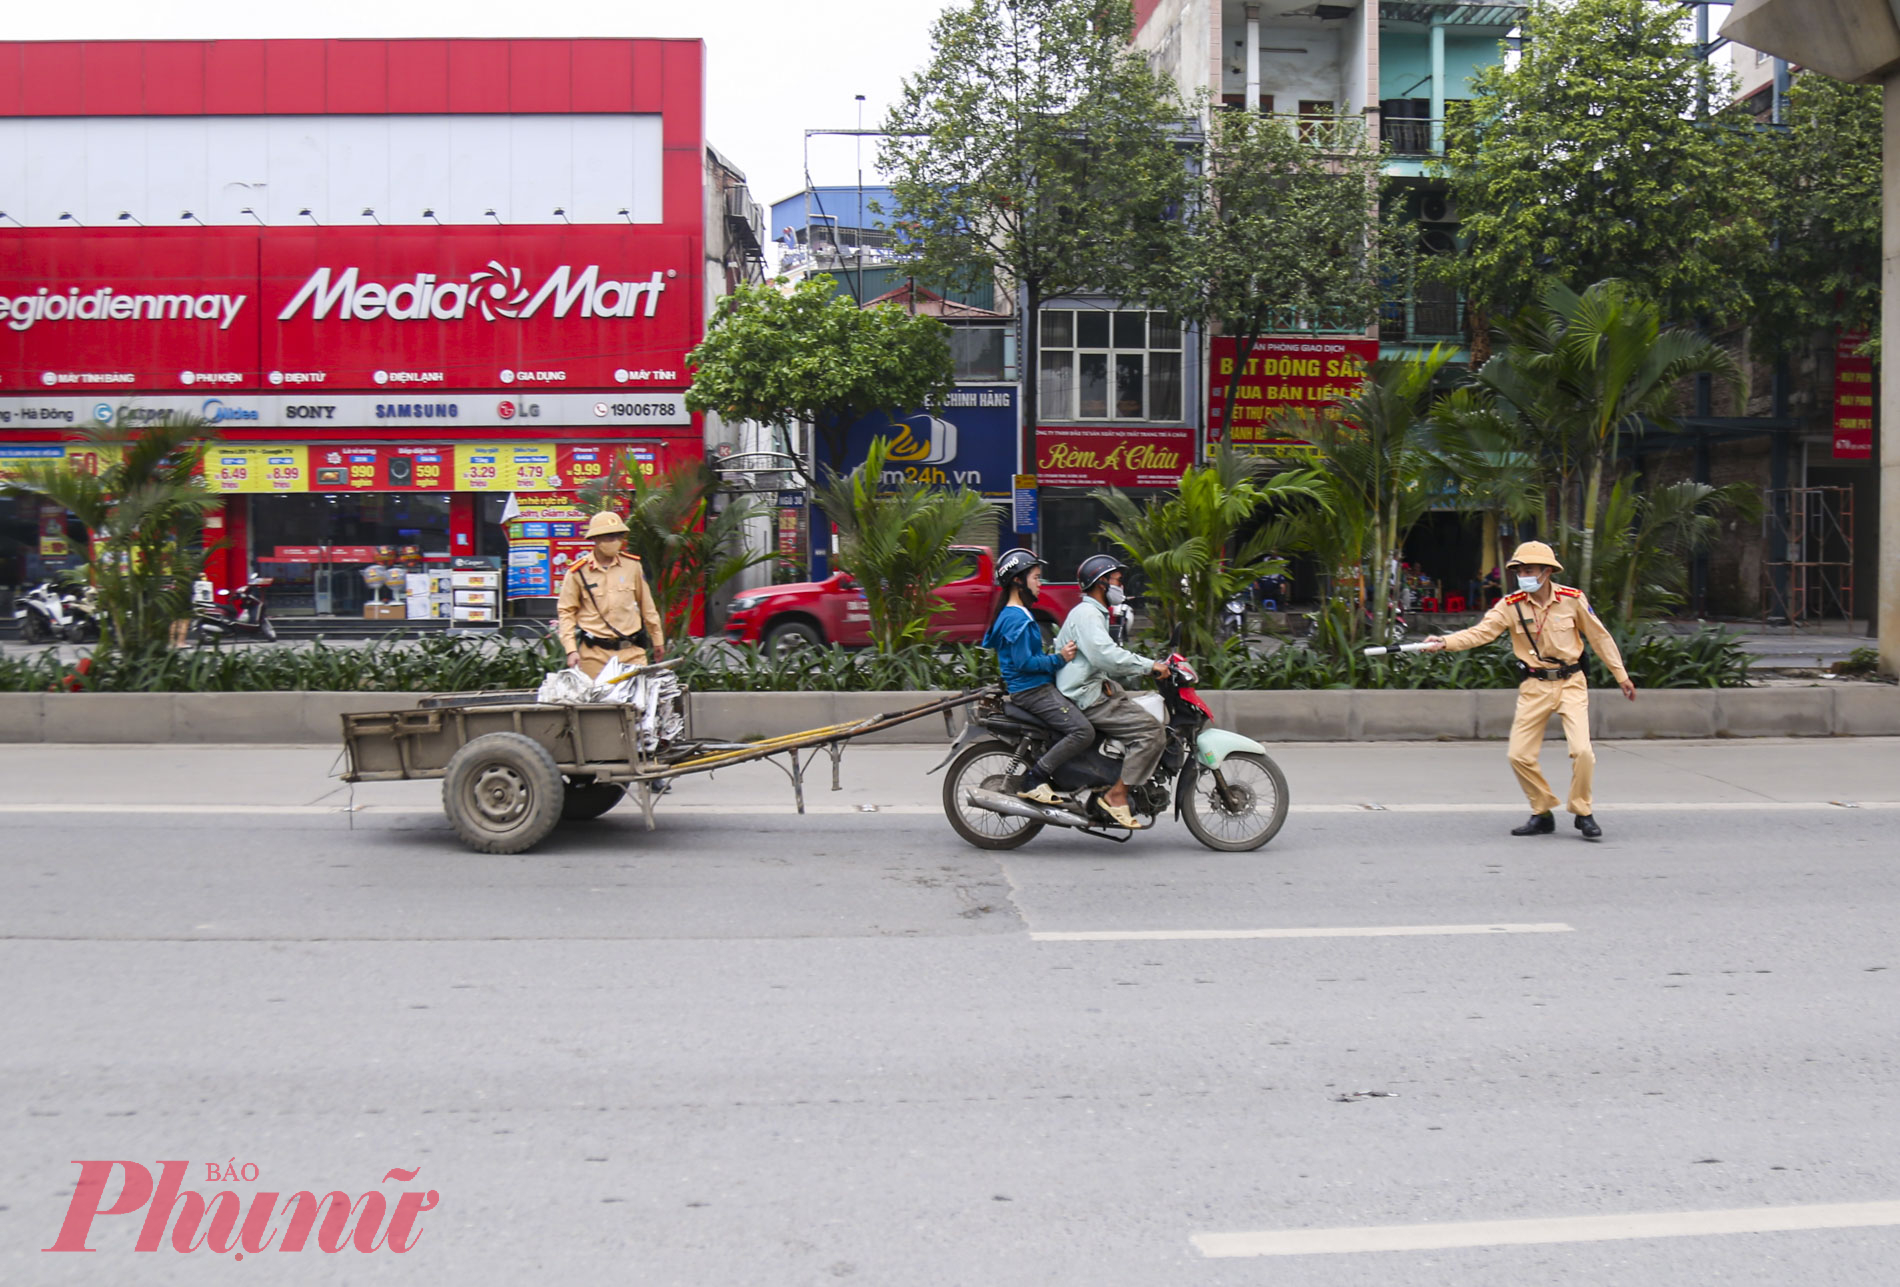 Lúc 9g20p, tổ công tác phát hiện xe máy không có BKS do anh N.N.M (SN 1990, ở huyện Ứng Hòa, Hà Nội), điều khiển kéo theo một phương tiện khác nên yêu cầu dừng xe để kiểm tra.